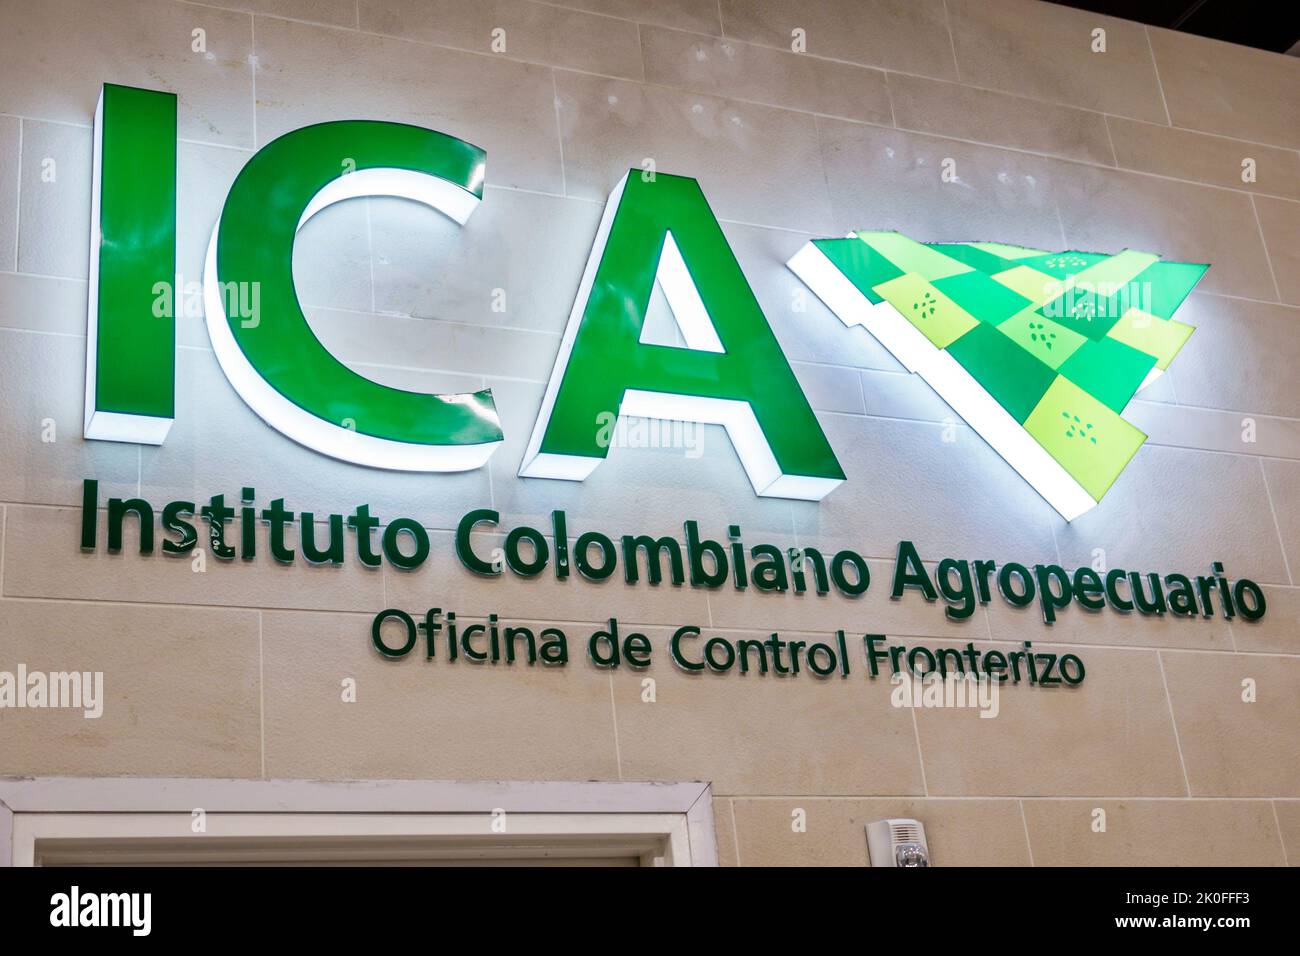 Bogota Colombia, El Dorado International Airport Aeropuerto Internacional El Dorado terminal interno, segno di controllo di frontiera Instituto Colombiano A. Foto Stock